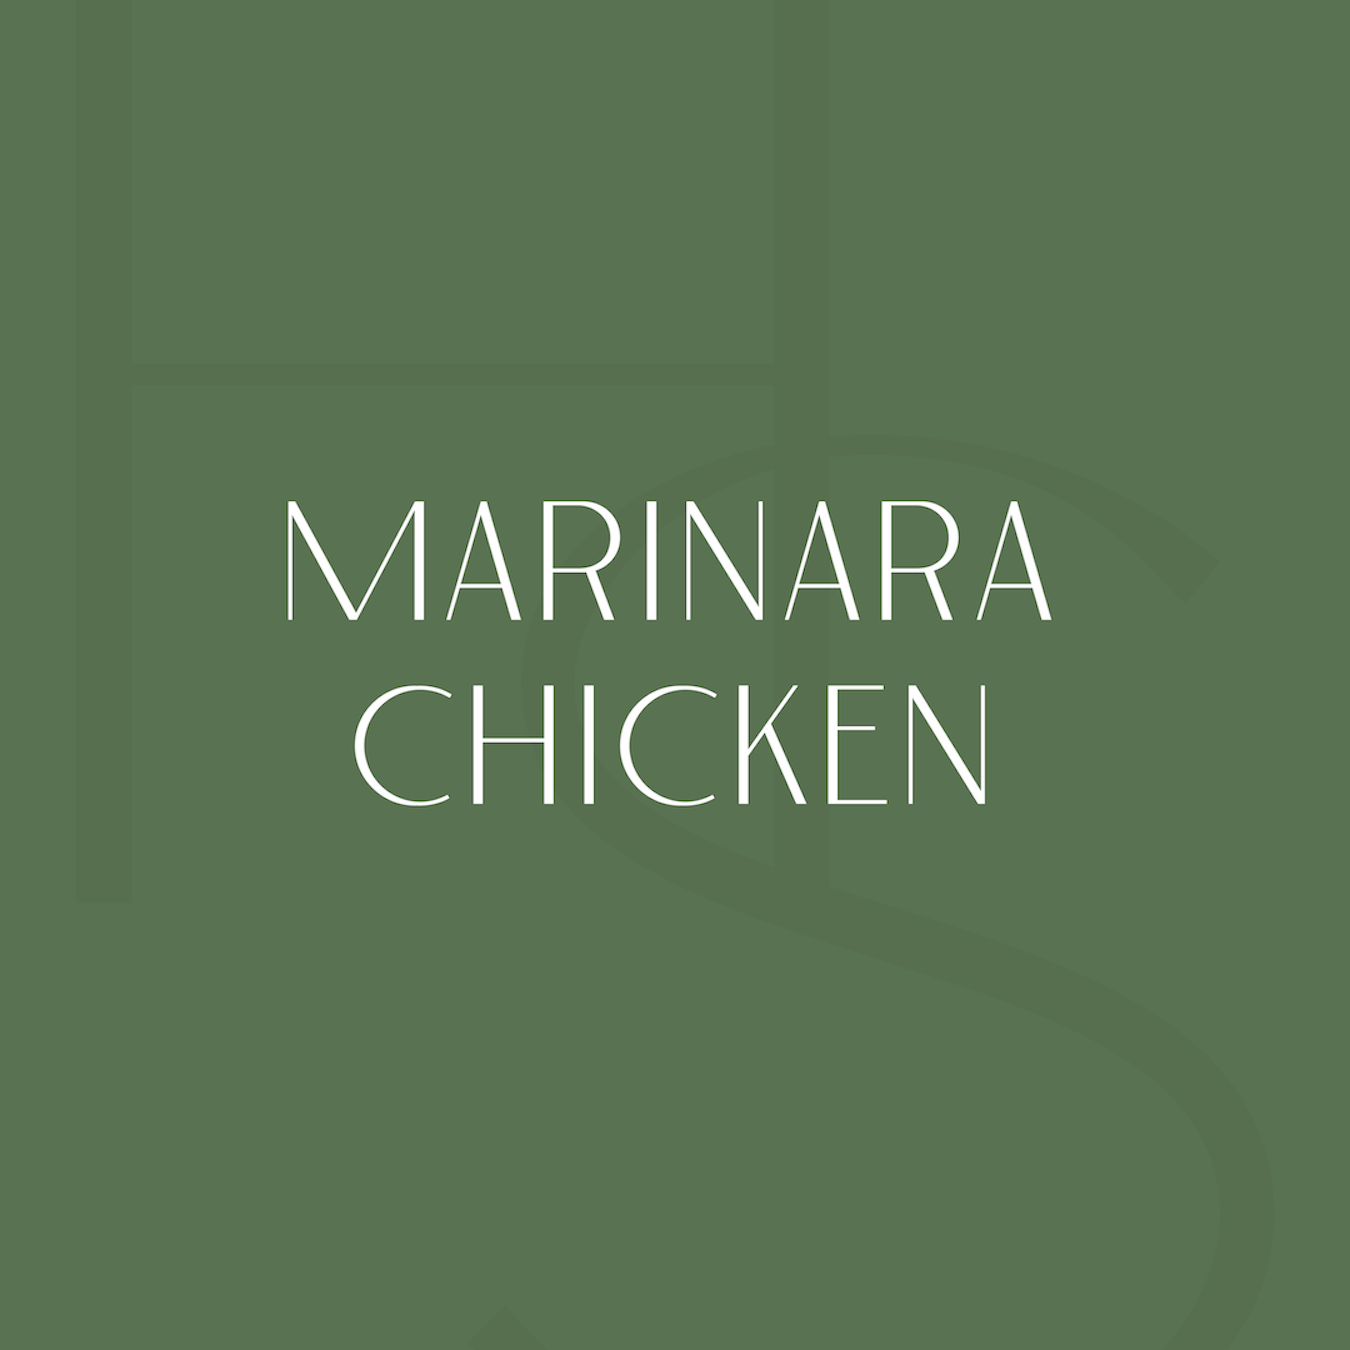 Marinara Chicken